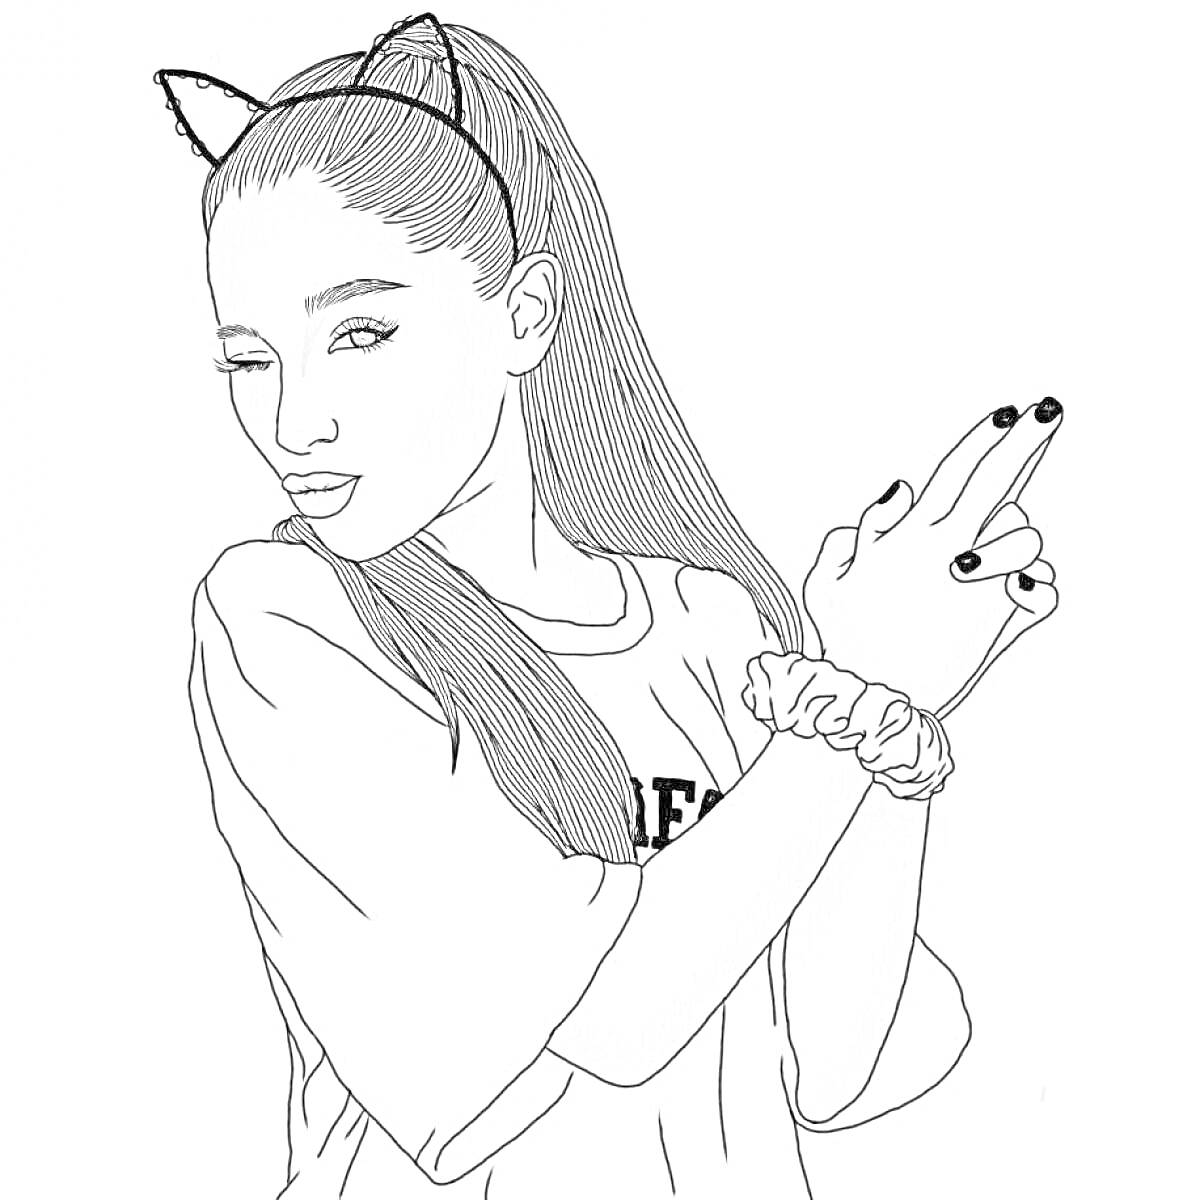 Раскраска Девушка с кошачьими ушками на ободке и длинными волосами, с хвостом, в футболке с надписью 